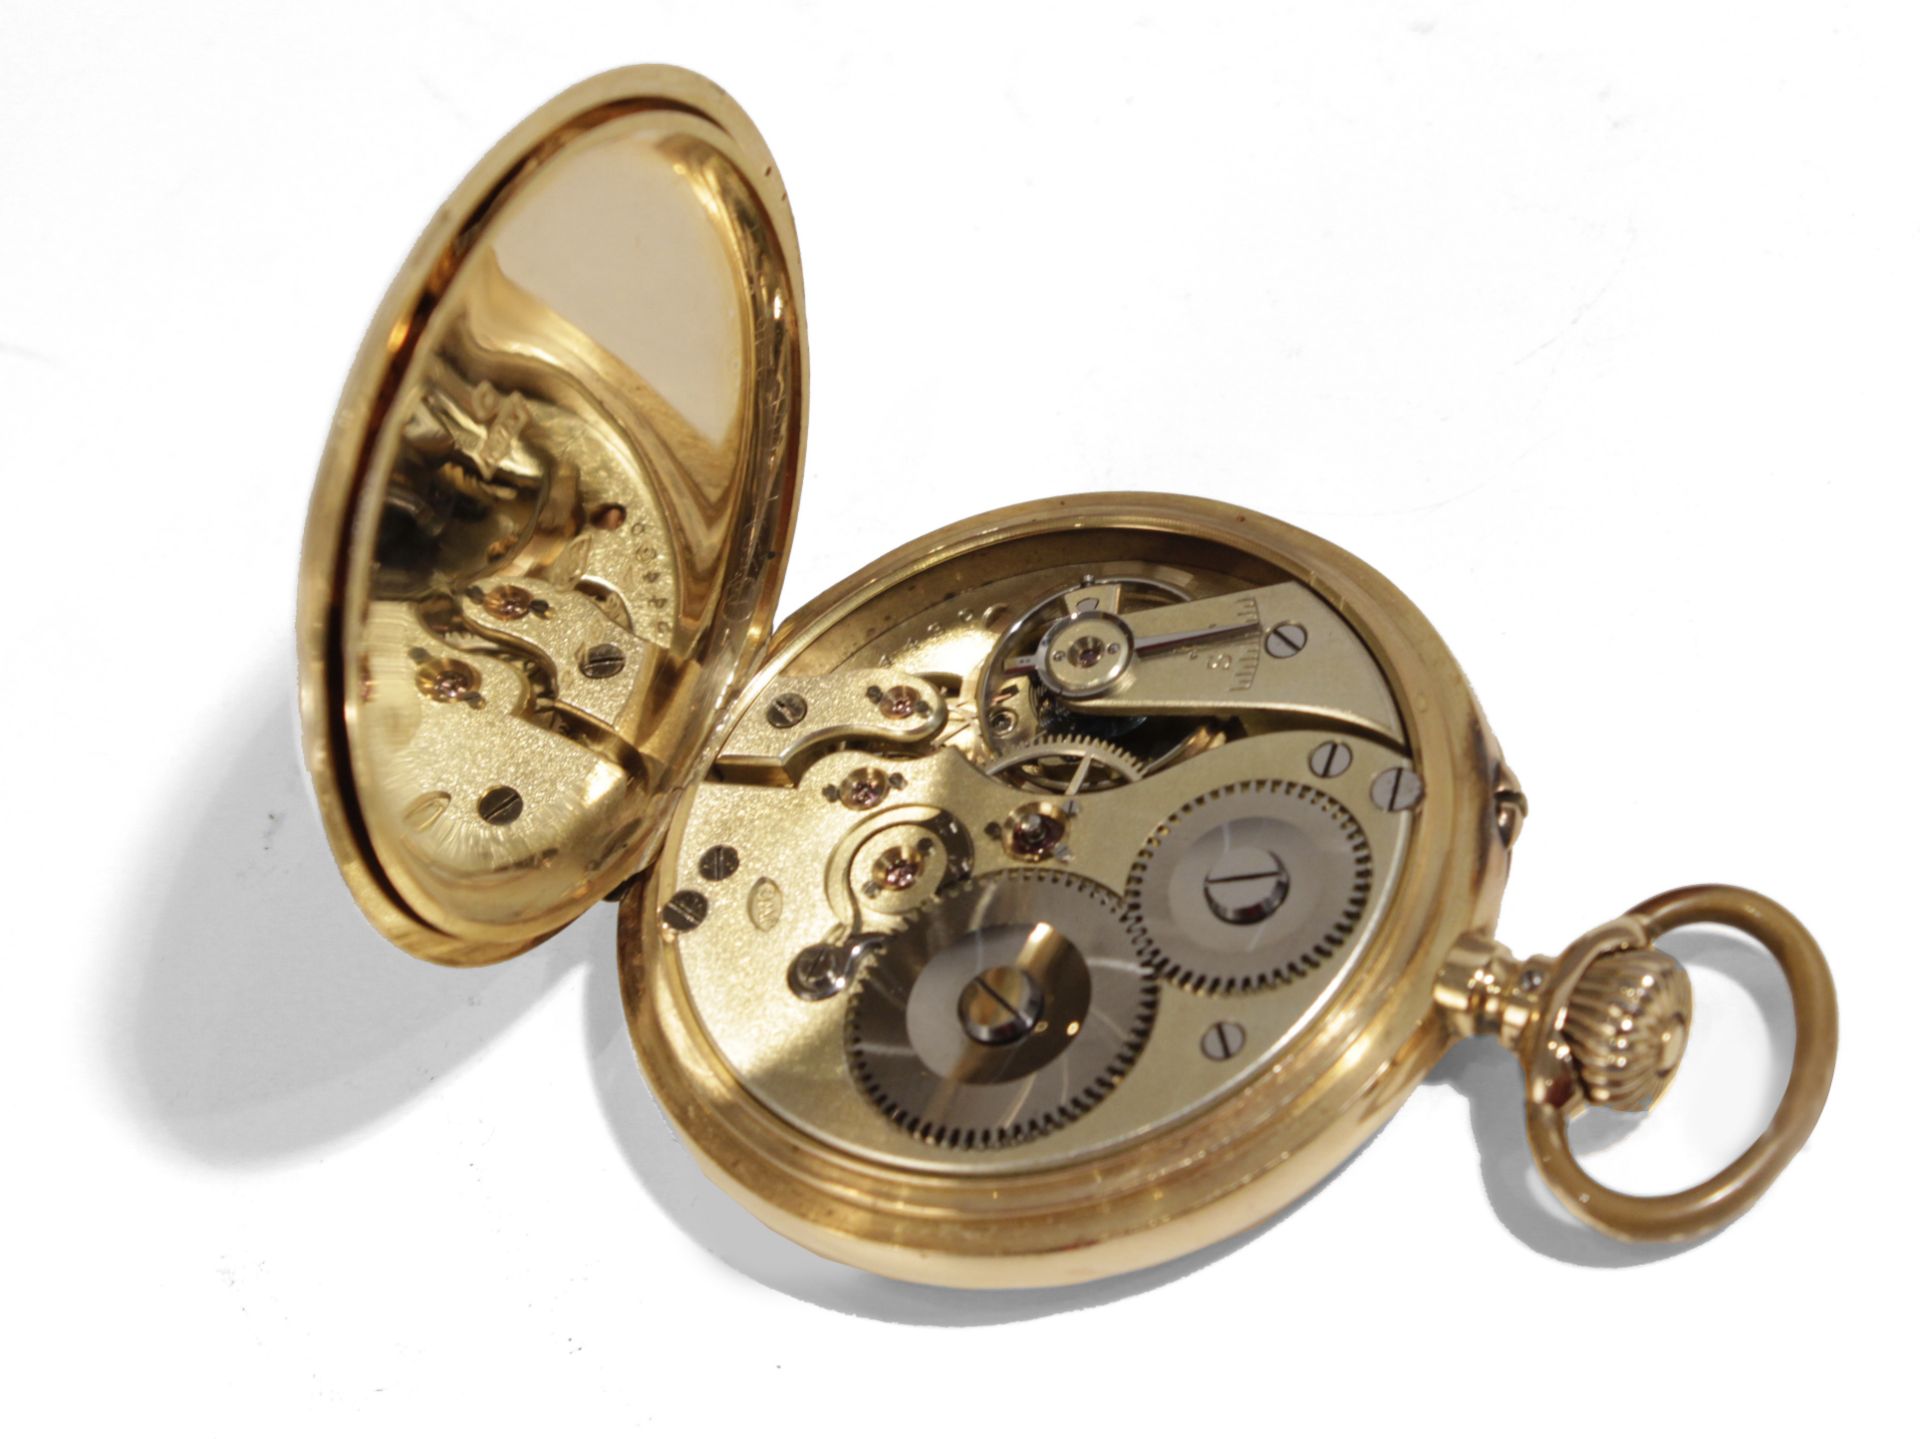 International Watch Company. An 18k. yellow gold open face pocket watch circa 1900 - Bild 2 aus 2